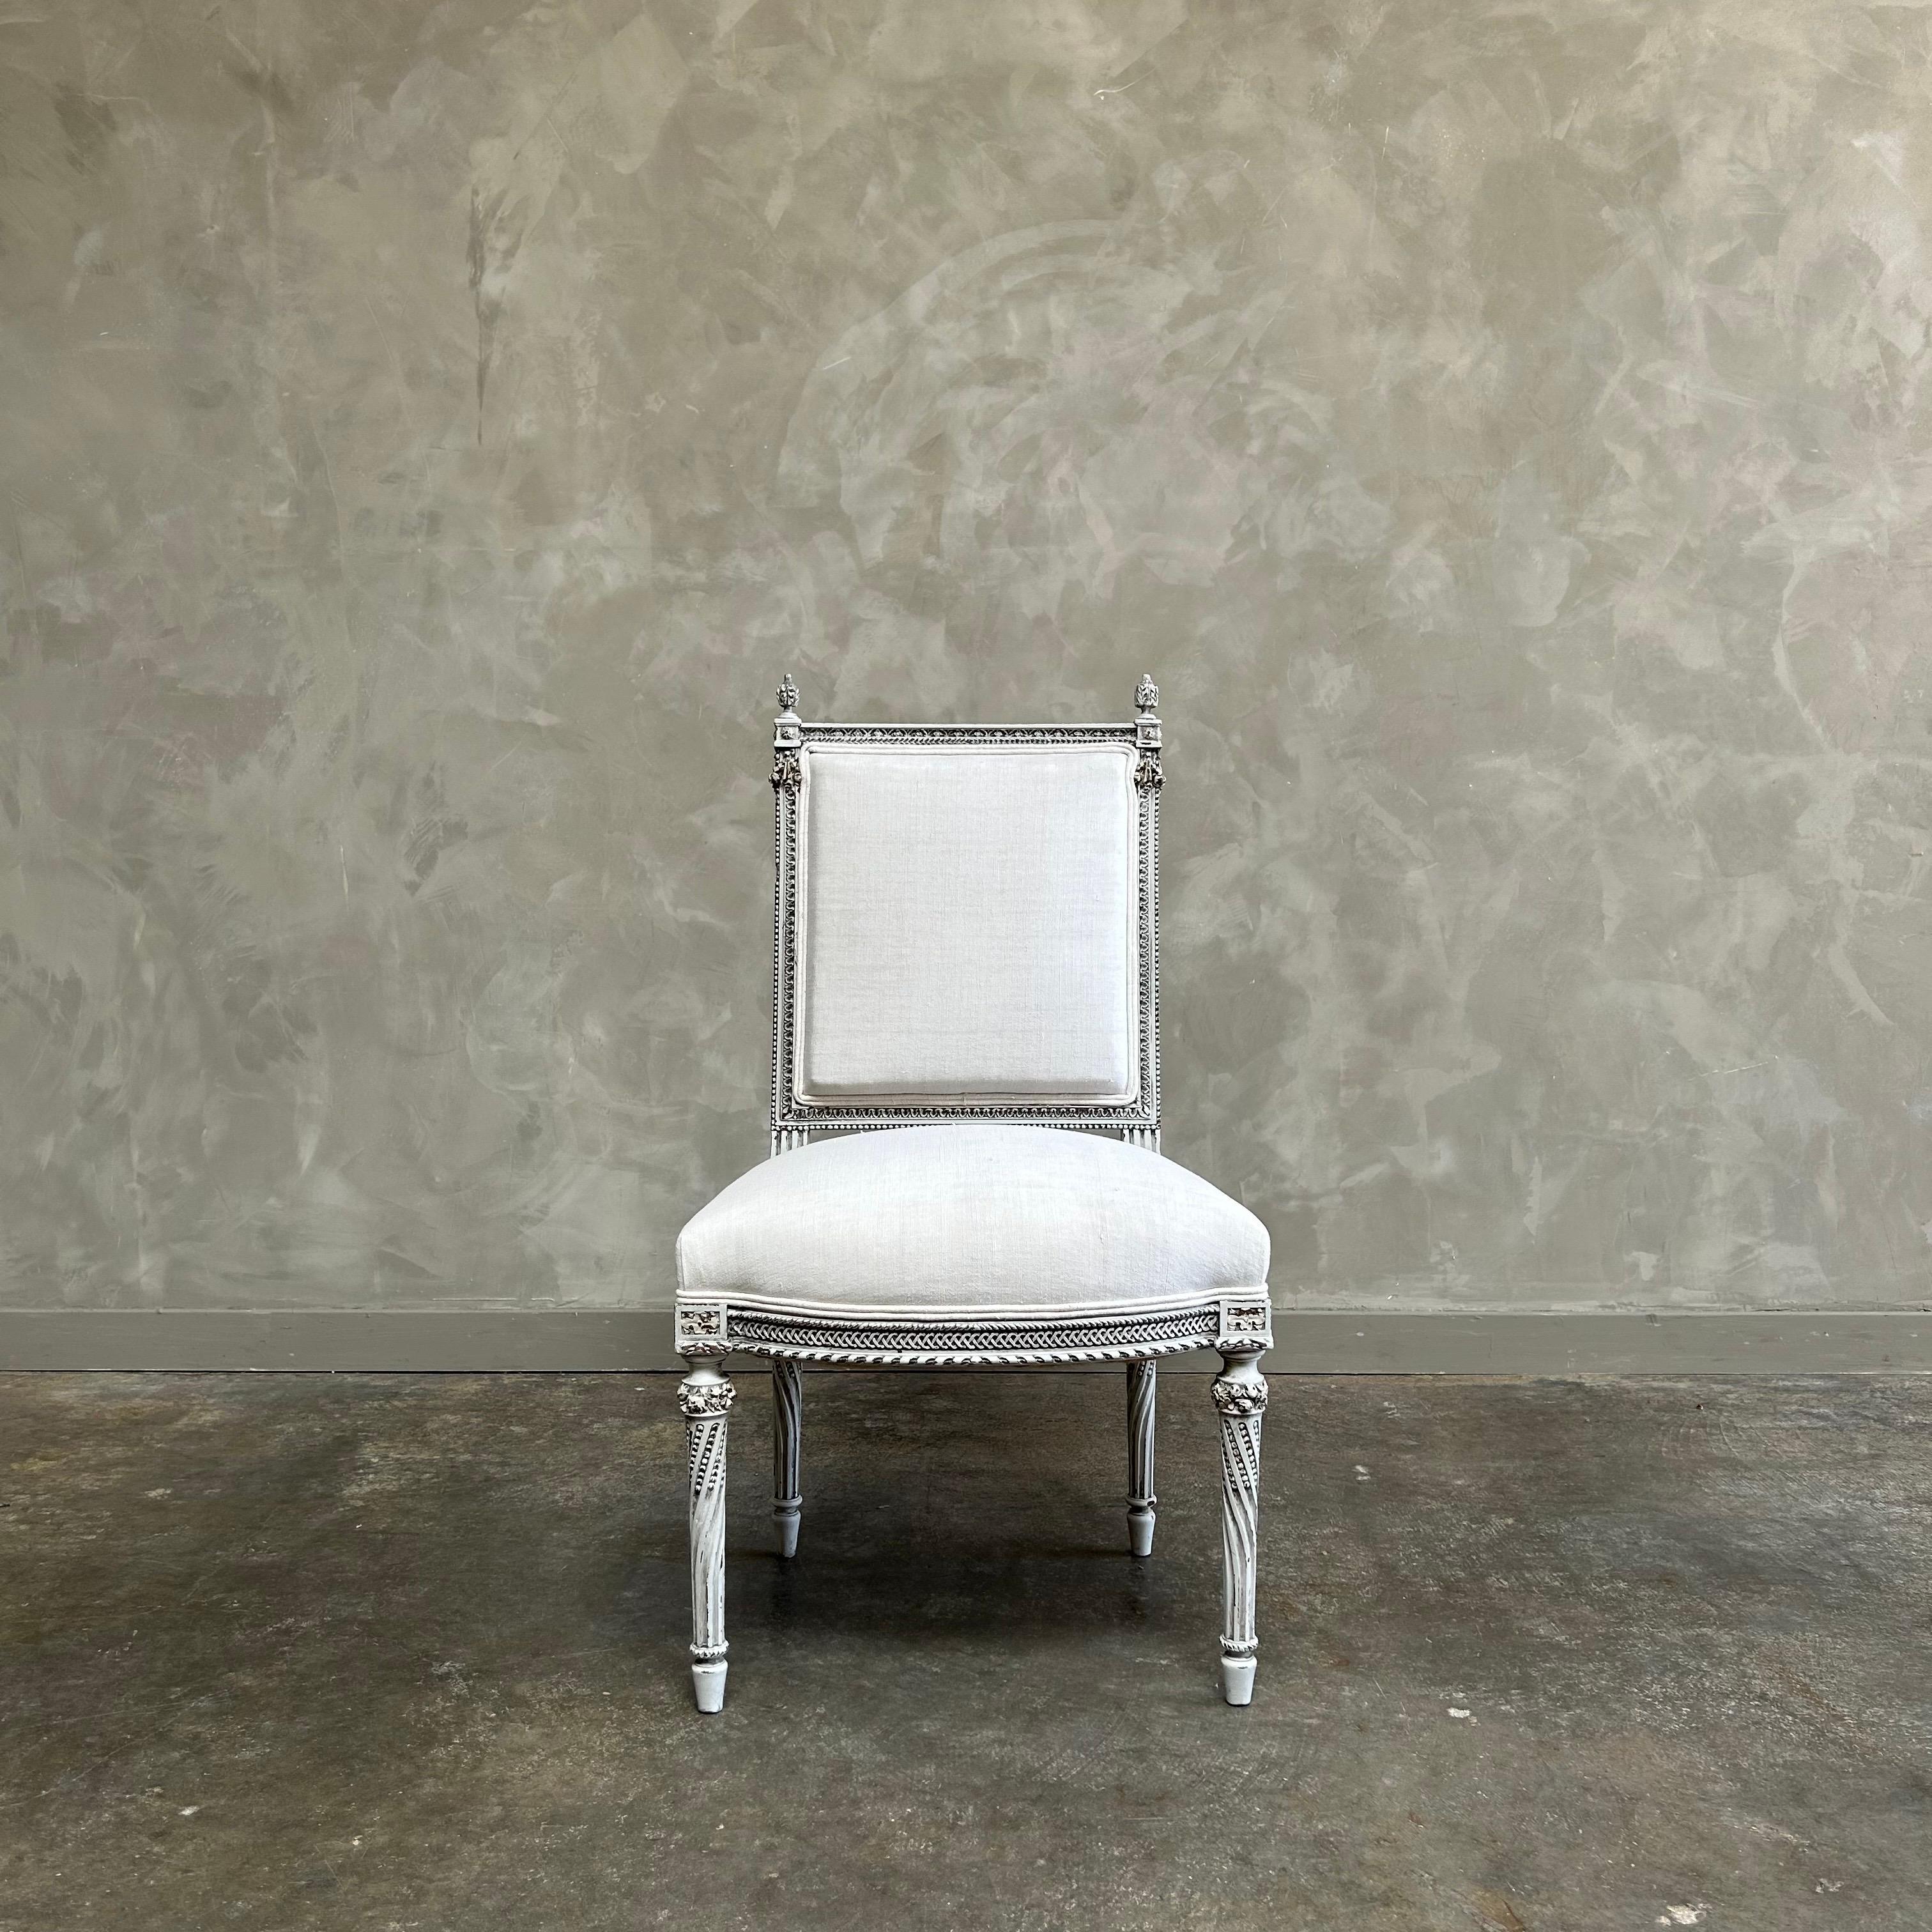 Chaise ancienne de style Louis XVI peinte et tapissée
Peint en gris huître lavé, avec des bords subtilement usés, et revêtu d'une mousseline de coton standard.
Solide et robuste, prêt pour un usage quotidien.
Chaise antique 21 